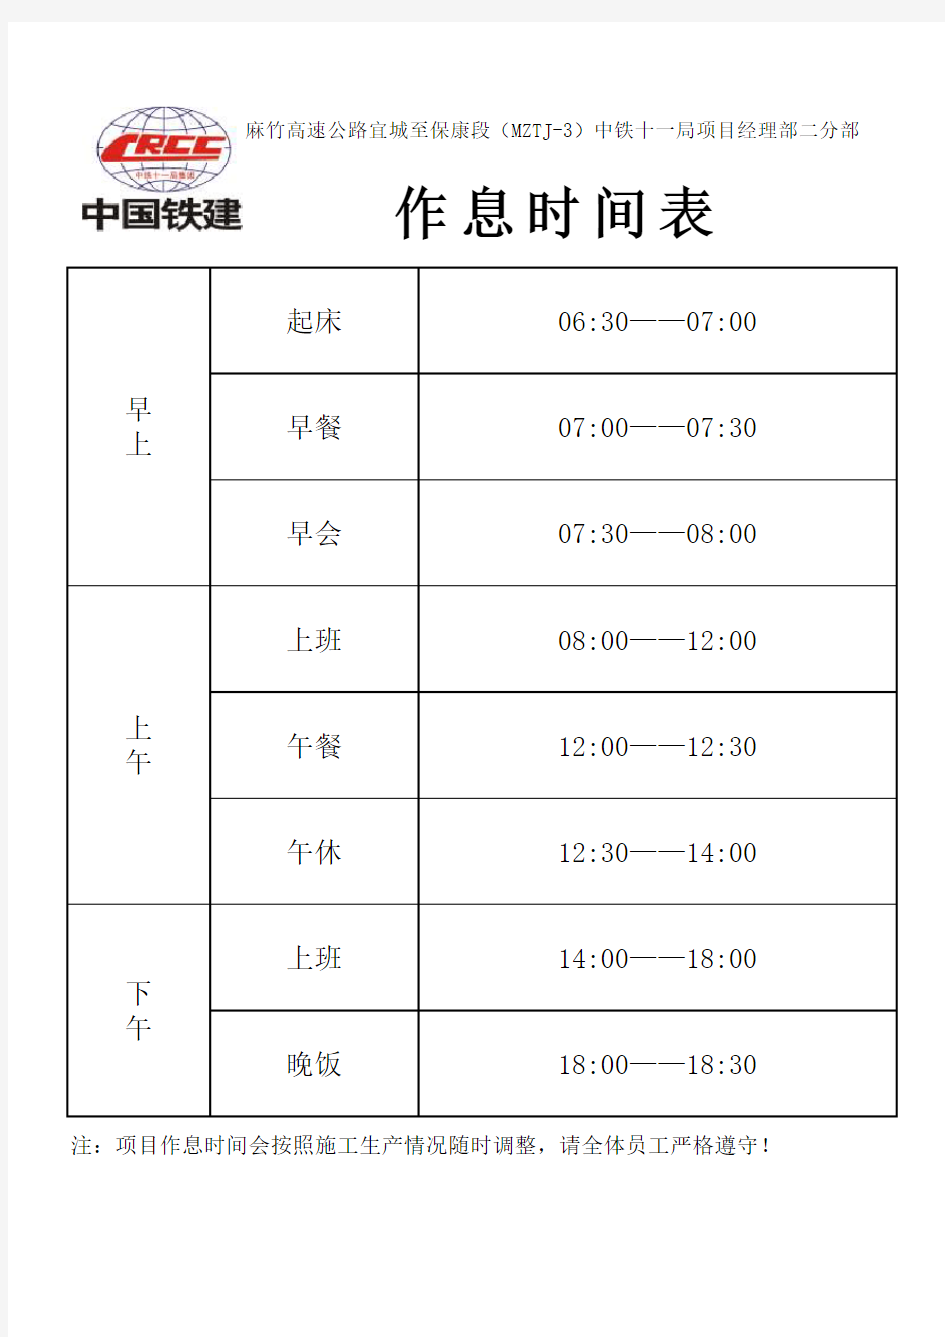 中铁11局作息时间表